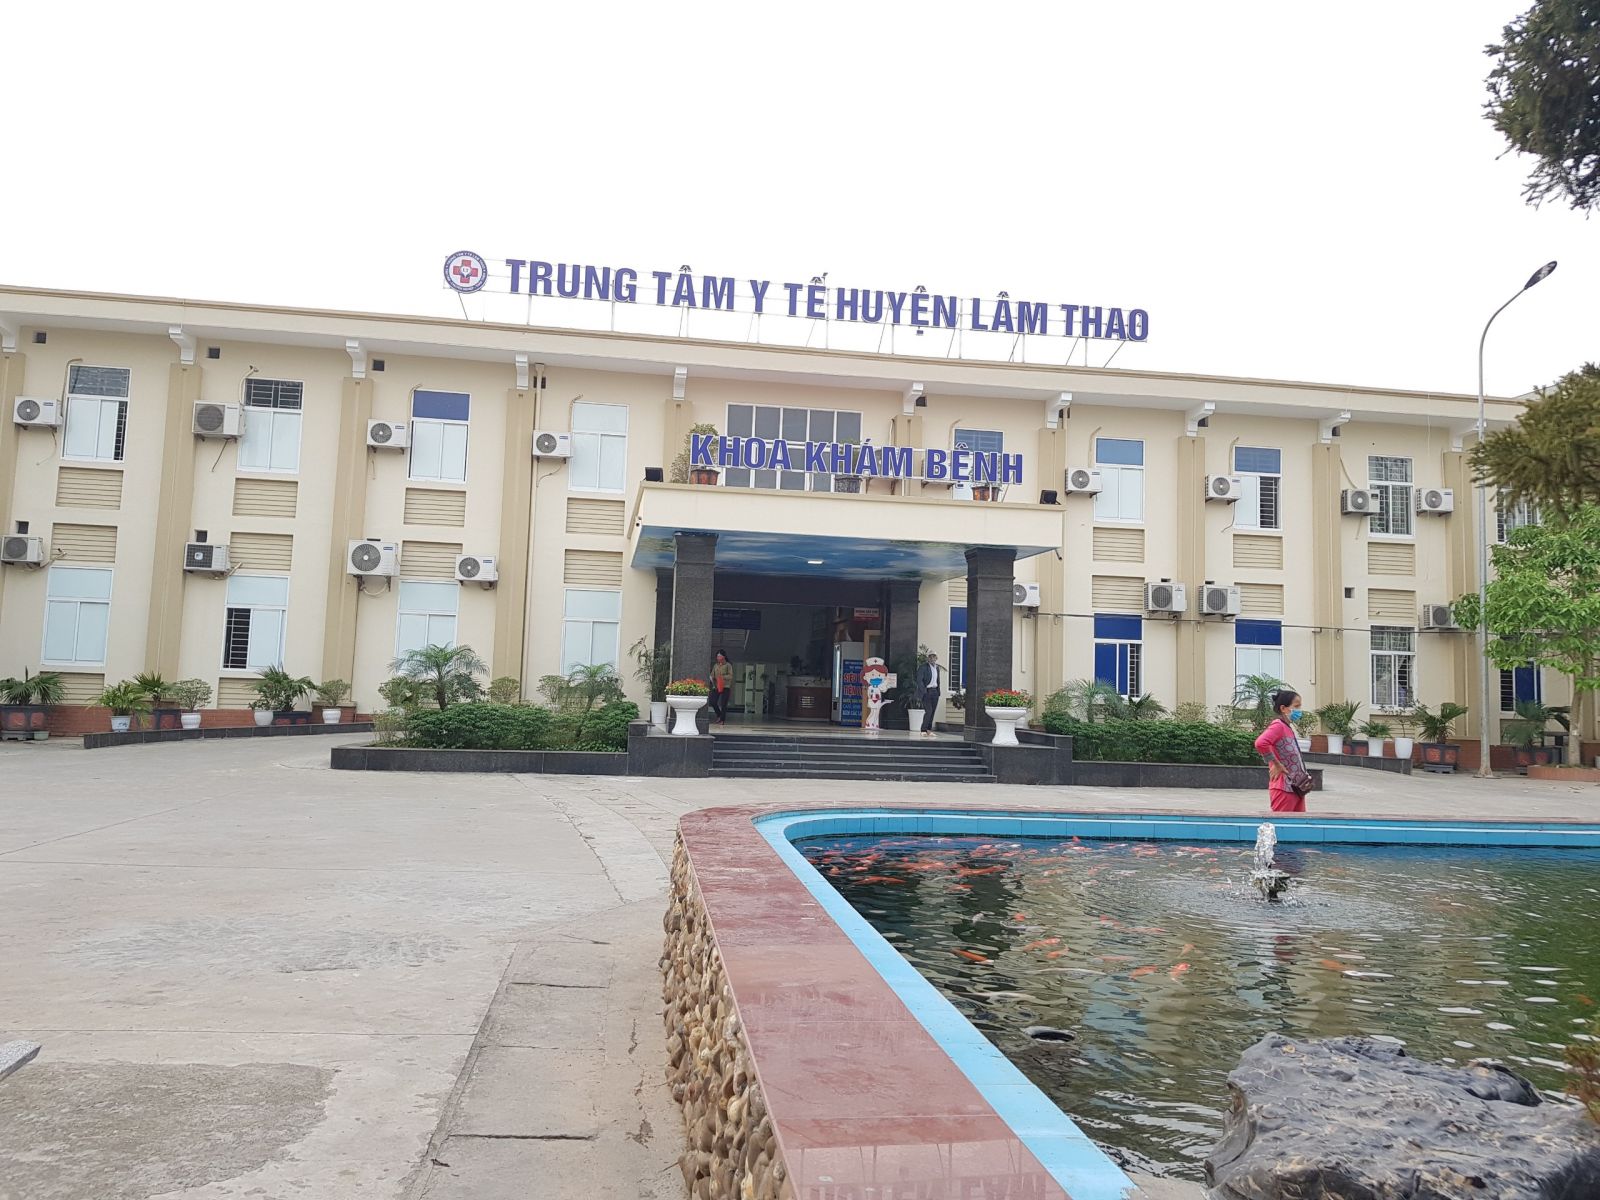 Khu tiếp nhận bệnh nhân của TTYT Lâm Thao luôn đảm bảo khoảng cách an toàn